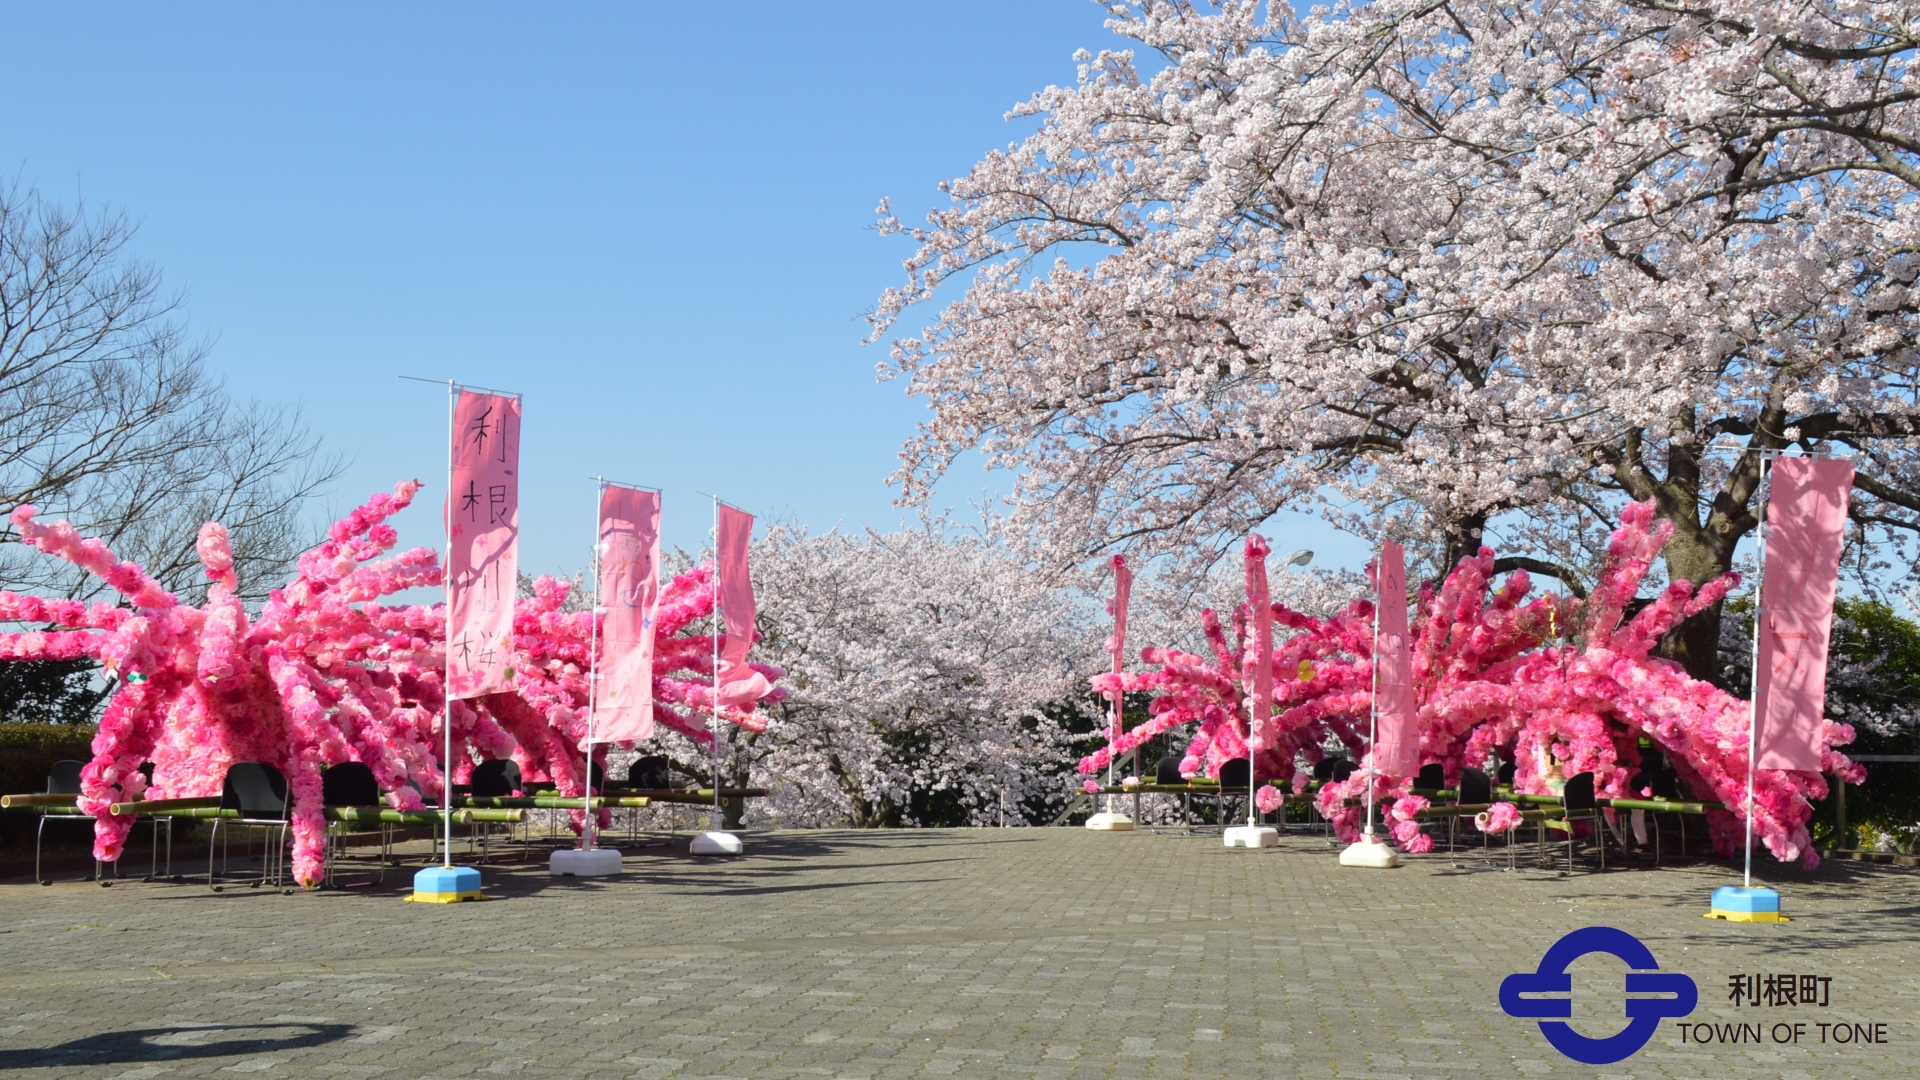 『花みこしと役場の桜』の画像